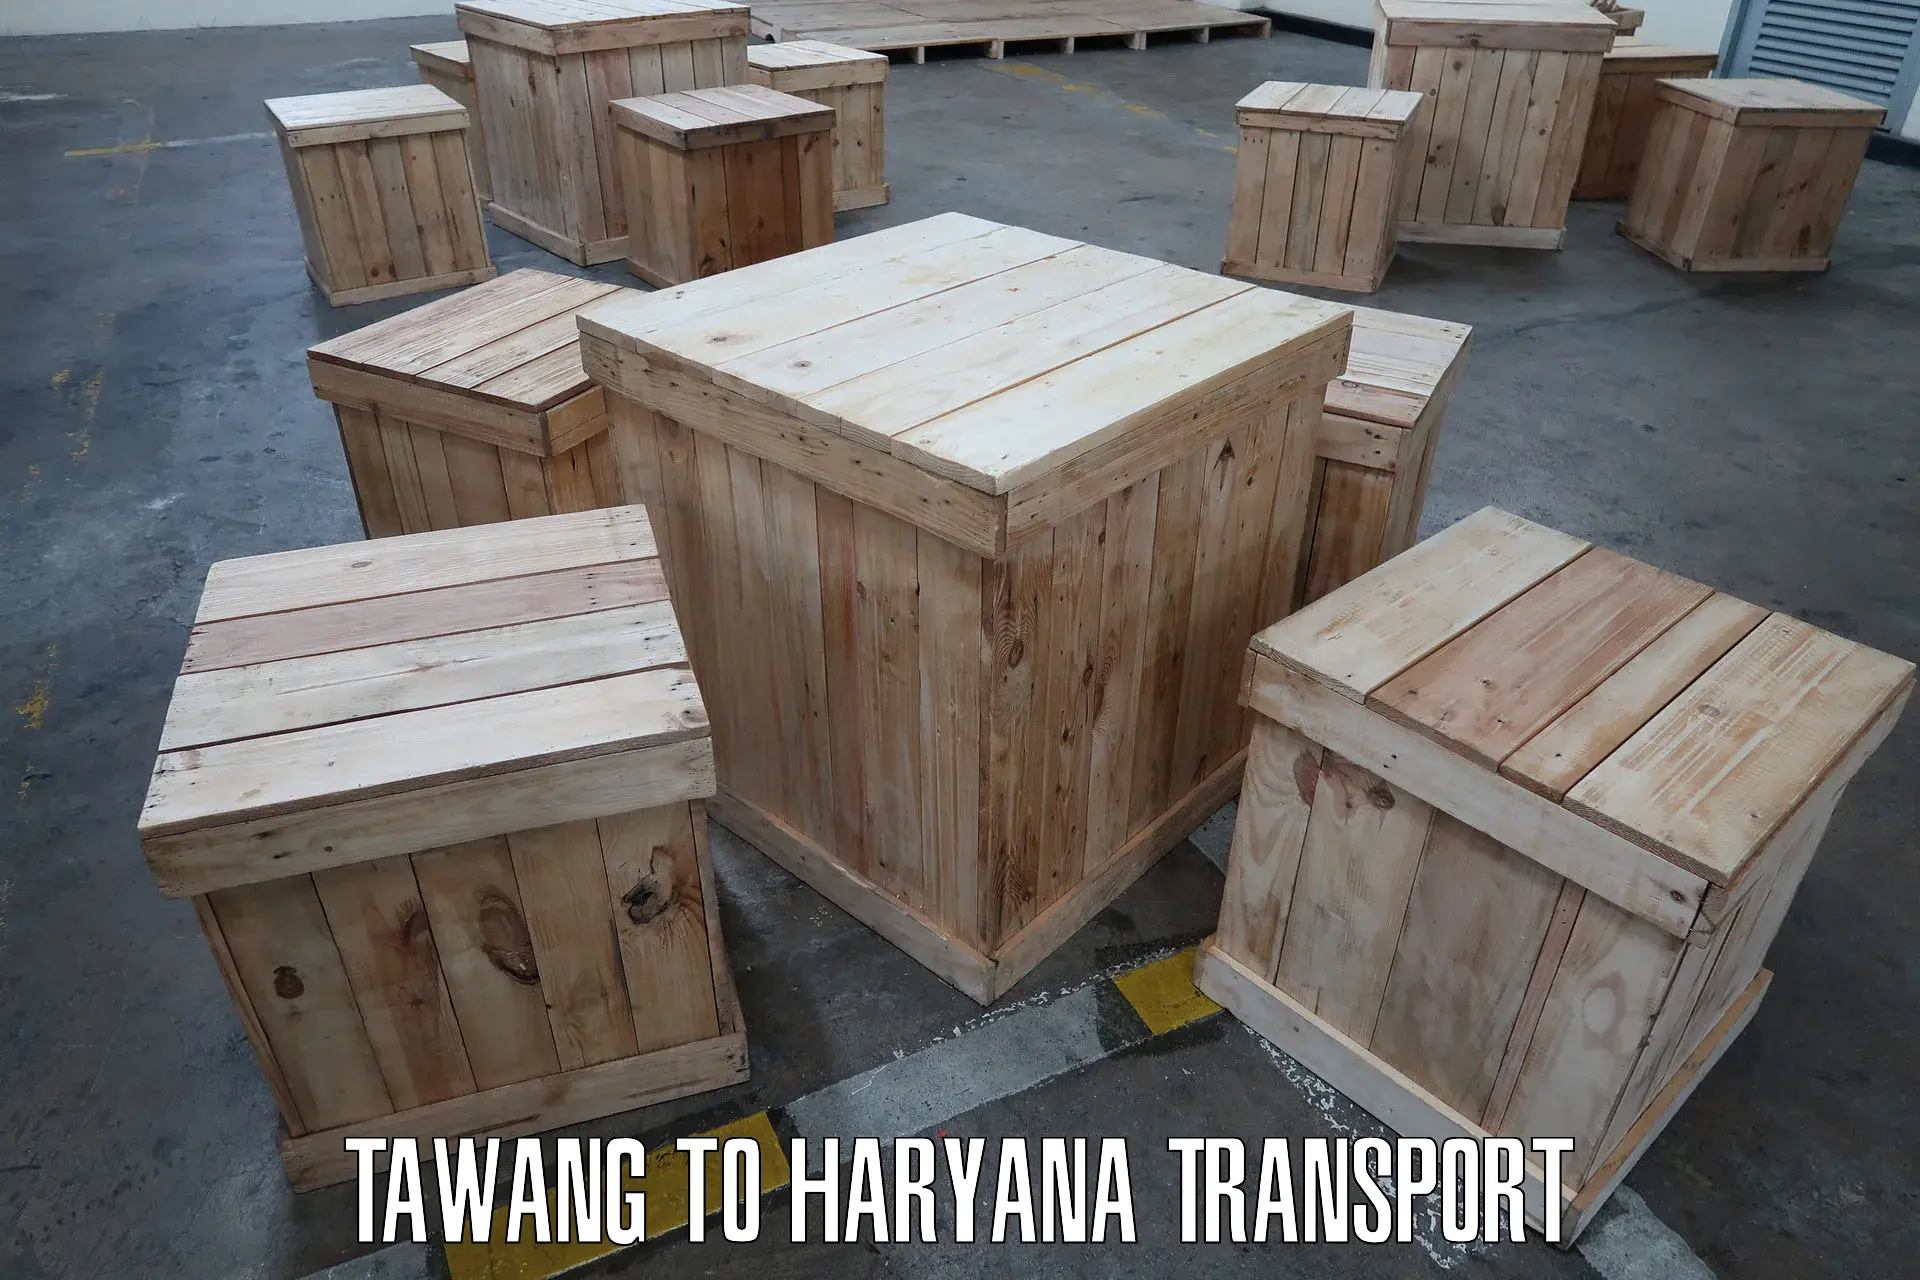 Online transport service Tawang to Panipat